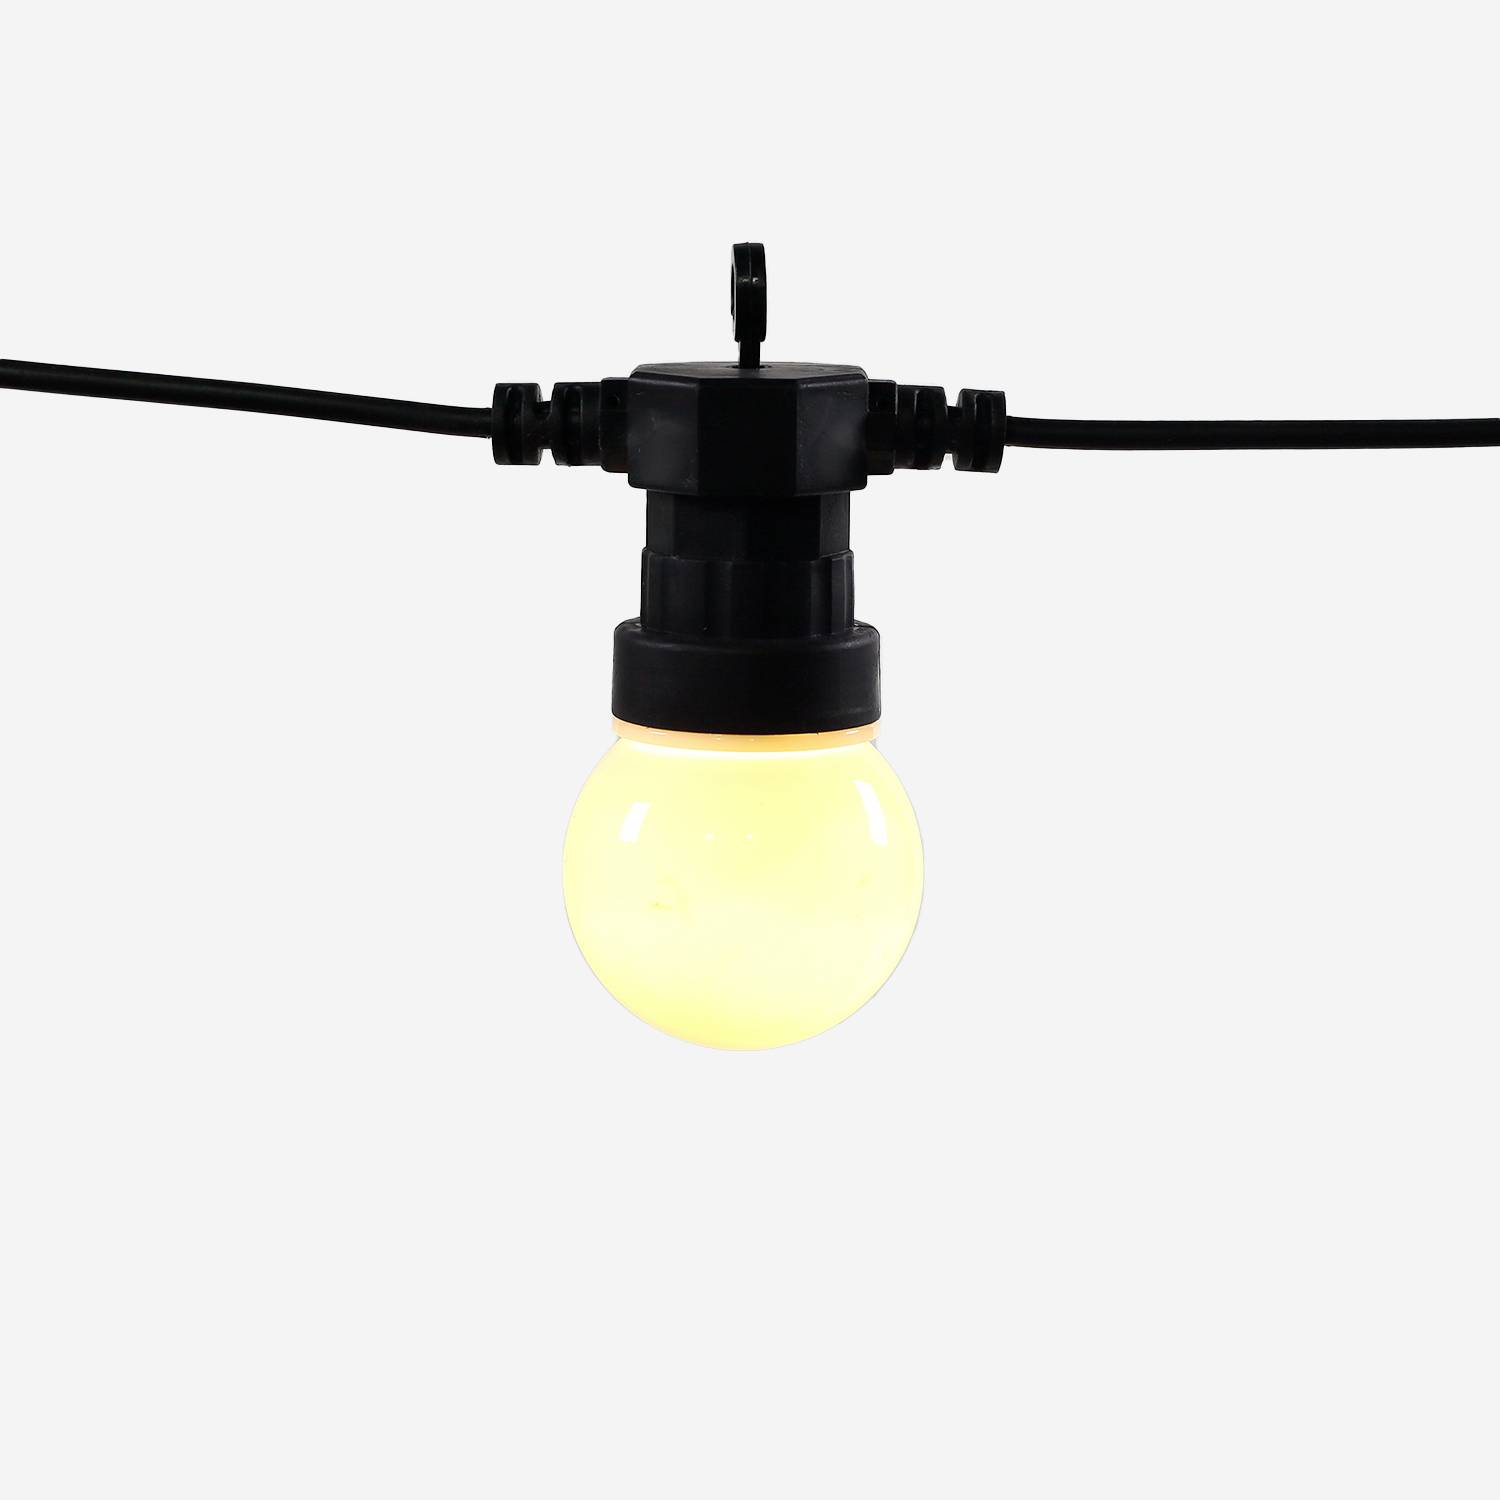 HERACLES - Luz ao ar livre com 10 lâmpadas, 50 LEDs braco, funcionamento a pilhas, função temporizador, 8 modos, 4,5 m de comprimento Photo4